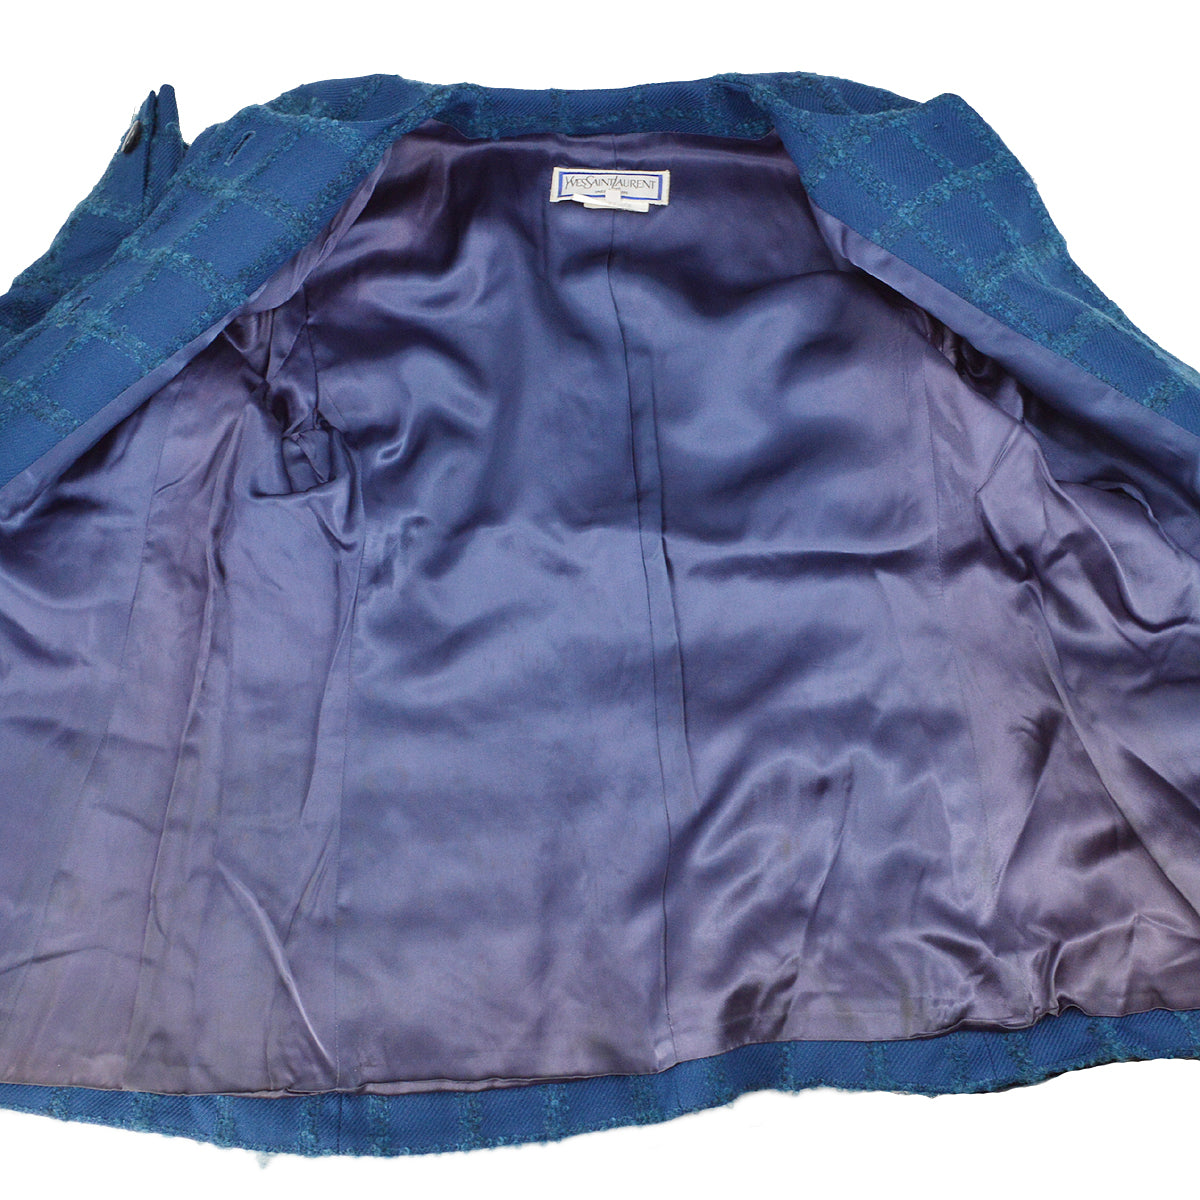 Yves Saint Laurent jacket skirt suit 